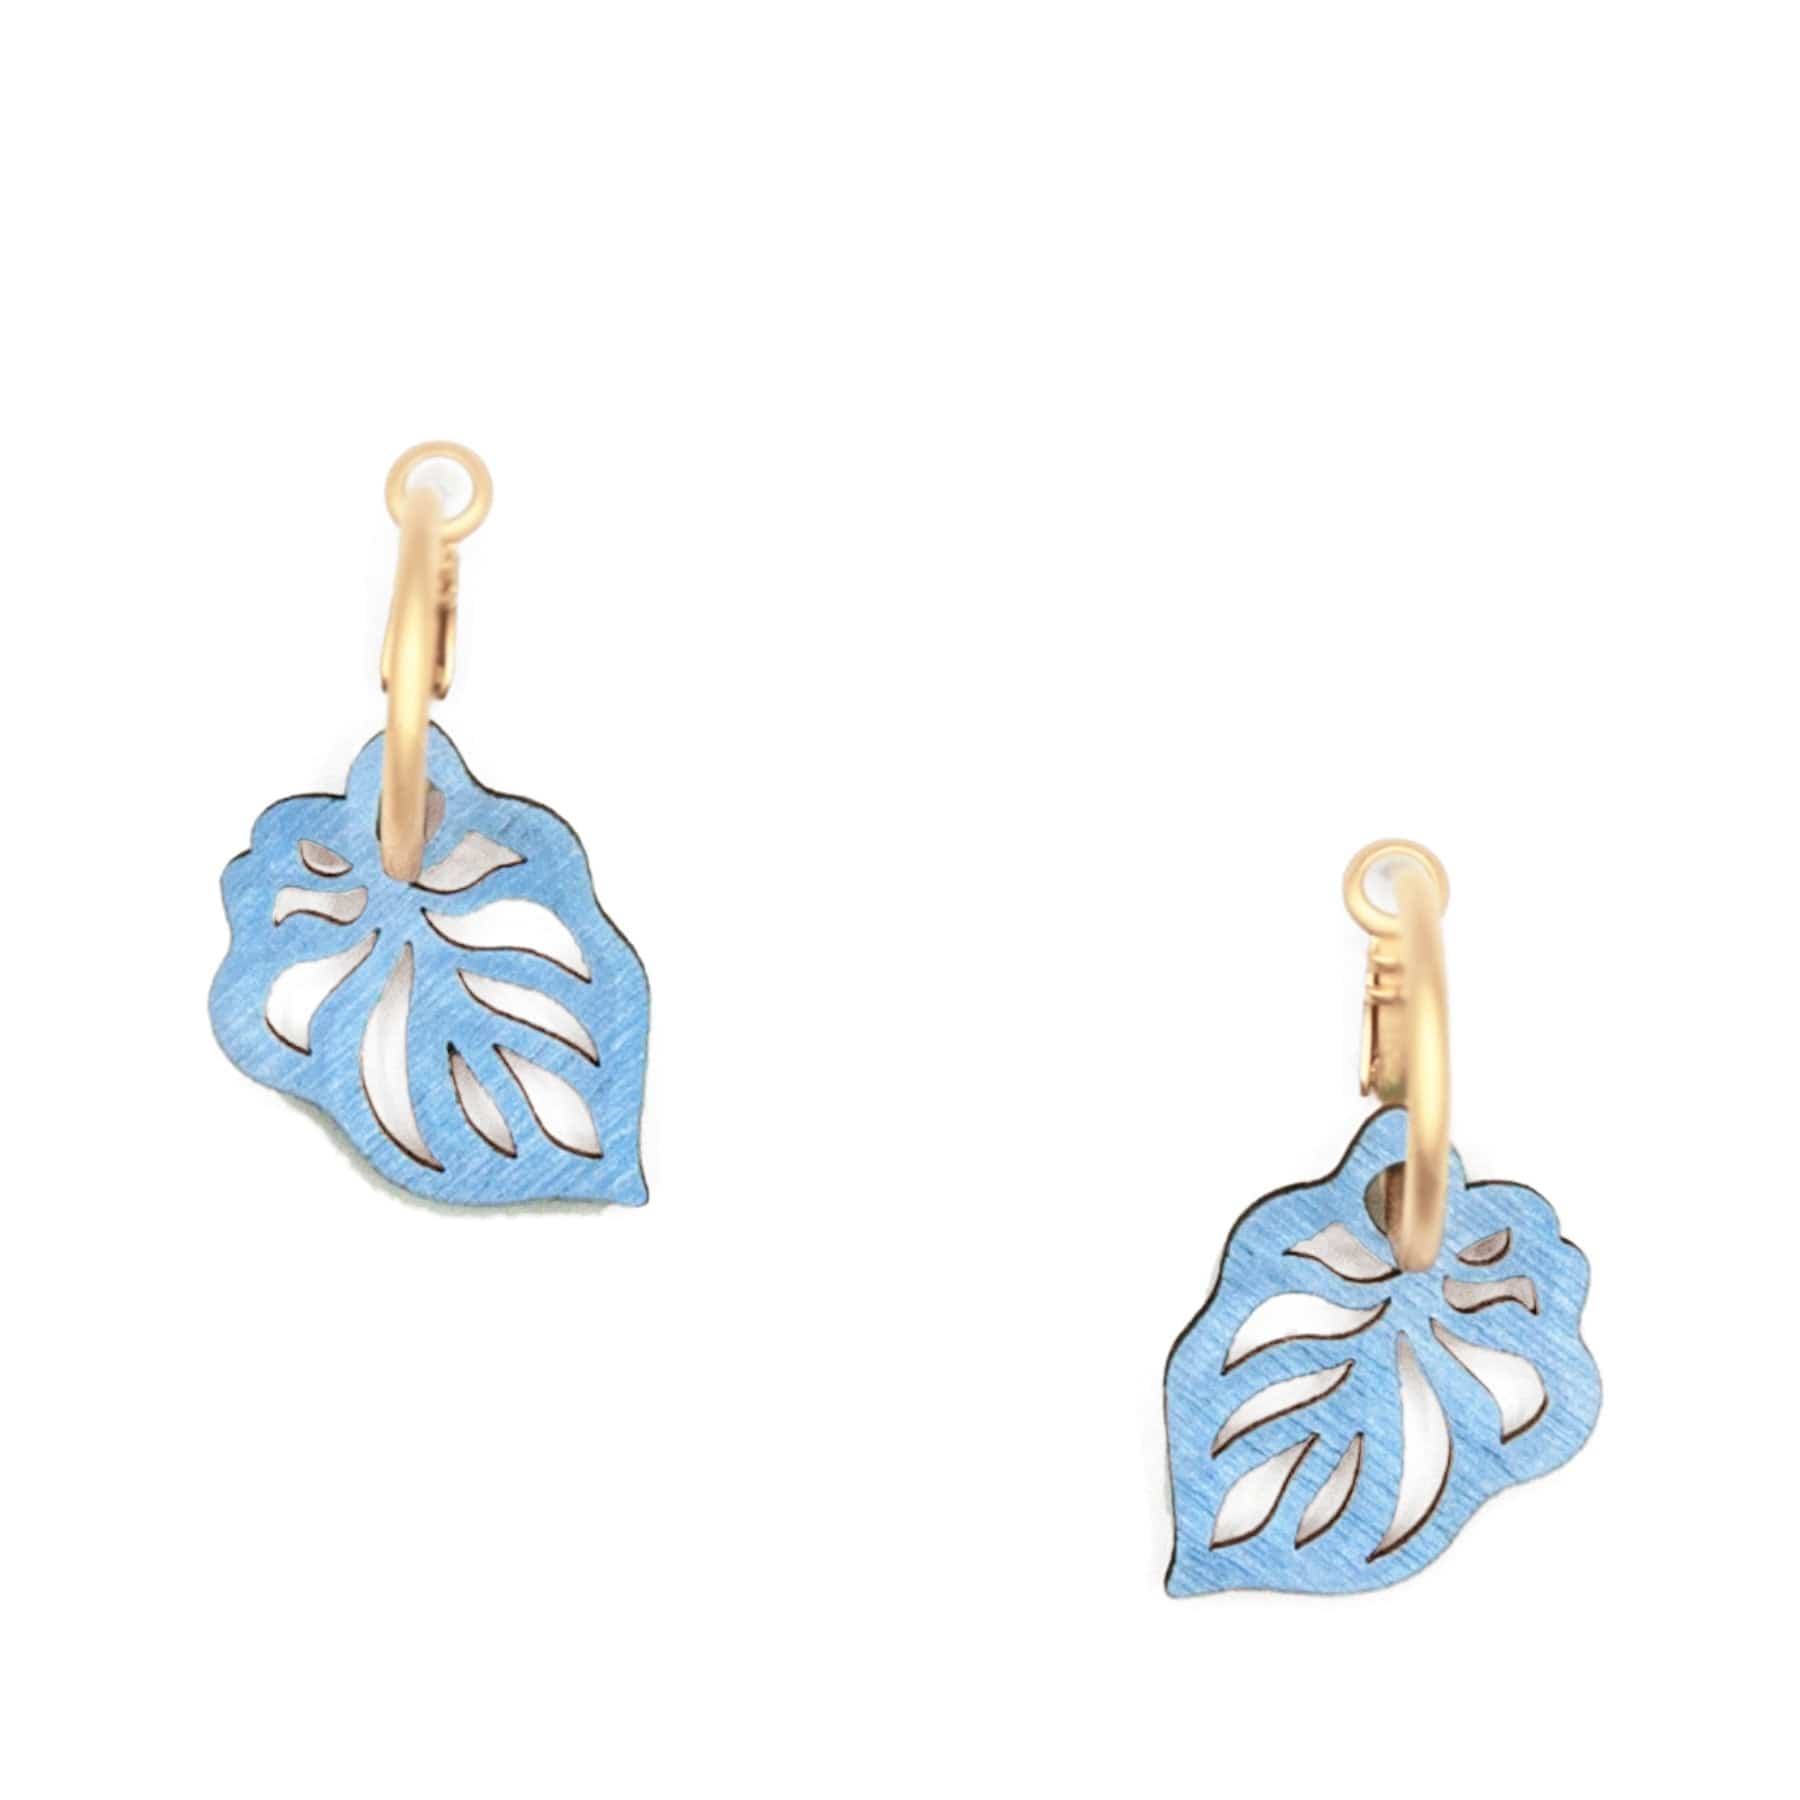 Reversible leaf calm earrings